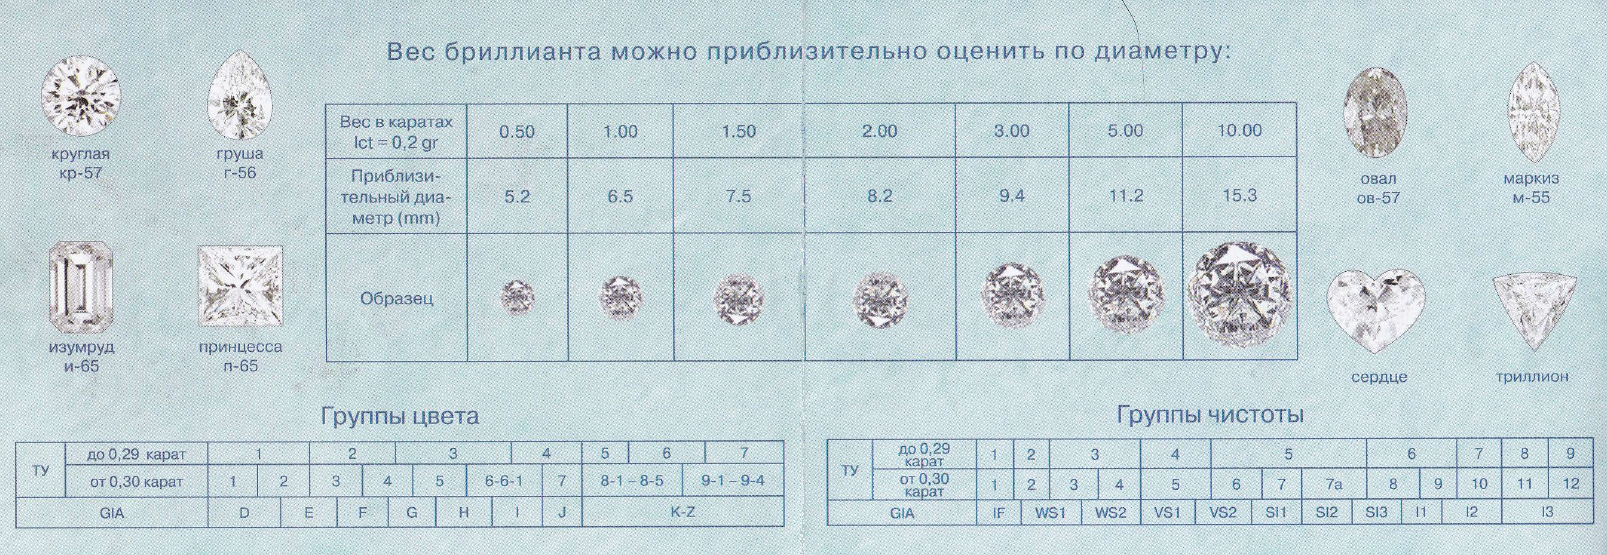 Размеры ювелирных изделий. Таблица вес чистота бриллианта. 0.05 Карат, цвет 3, чистота 6, Тип огранки а;.